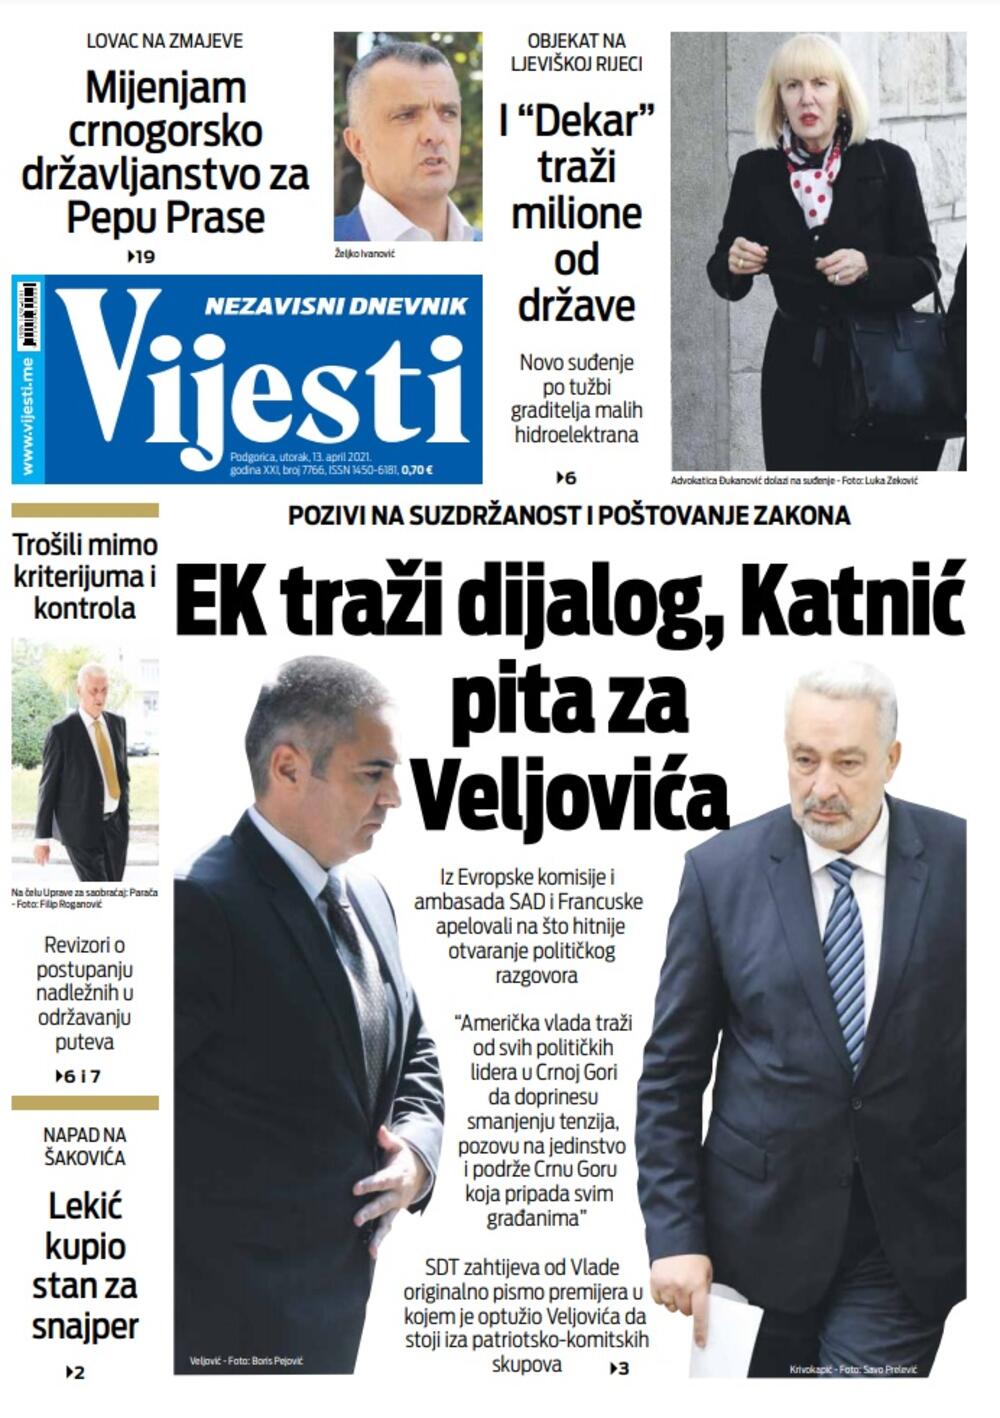 Naslovna strana "Vijesti" za utorak 13. april 2021. godine, Foto: Vijesti